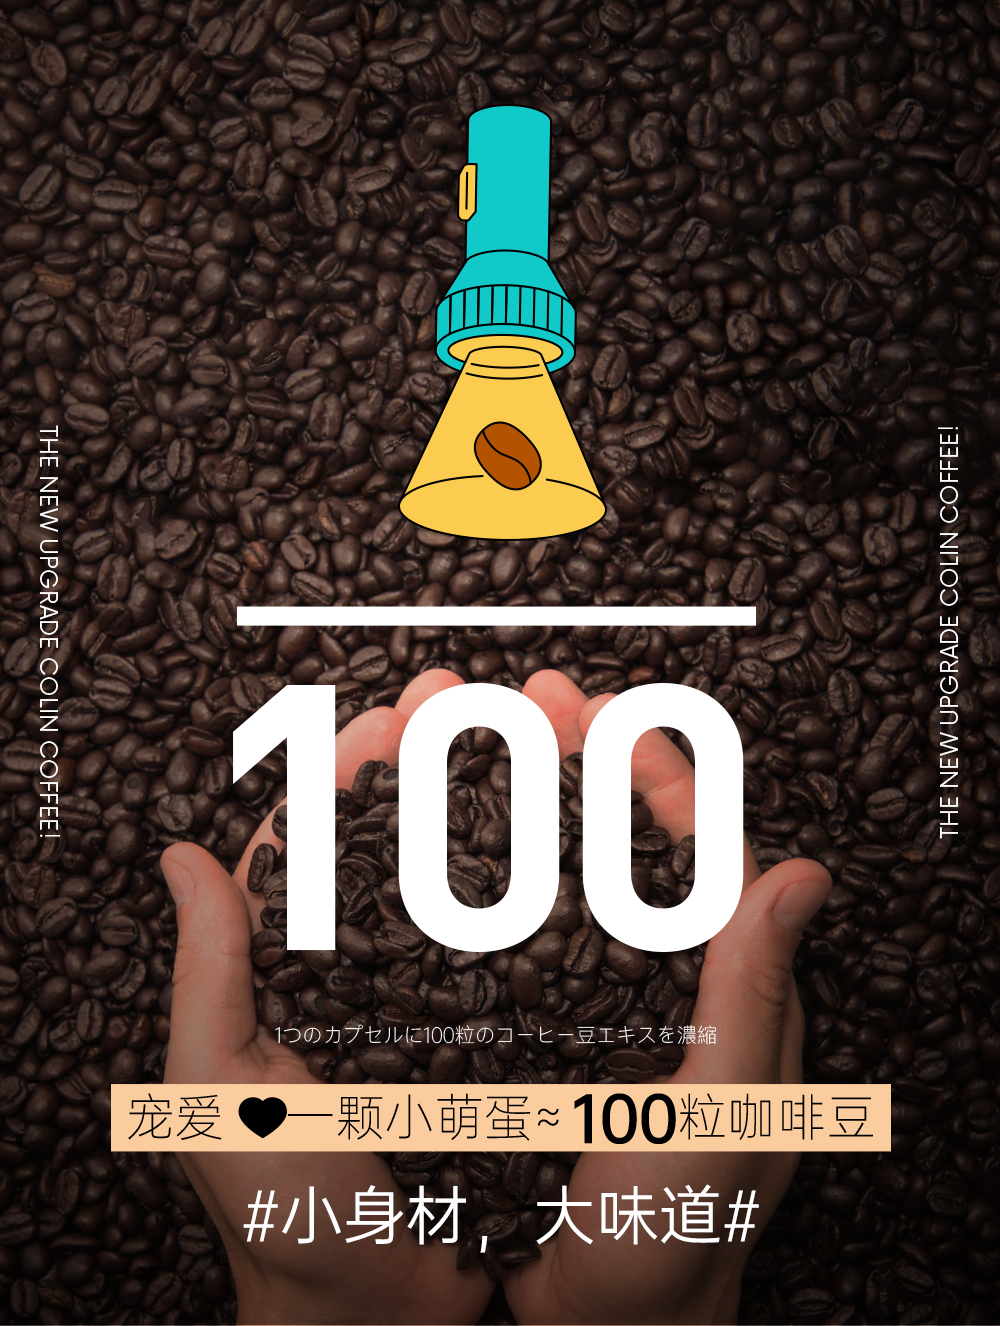 柯林丨小萌蛋日本进口冷萃咖啡浓缩萃取咖啡液